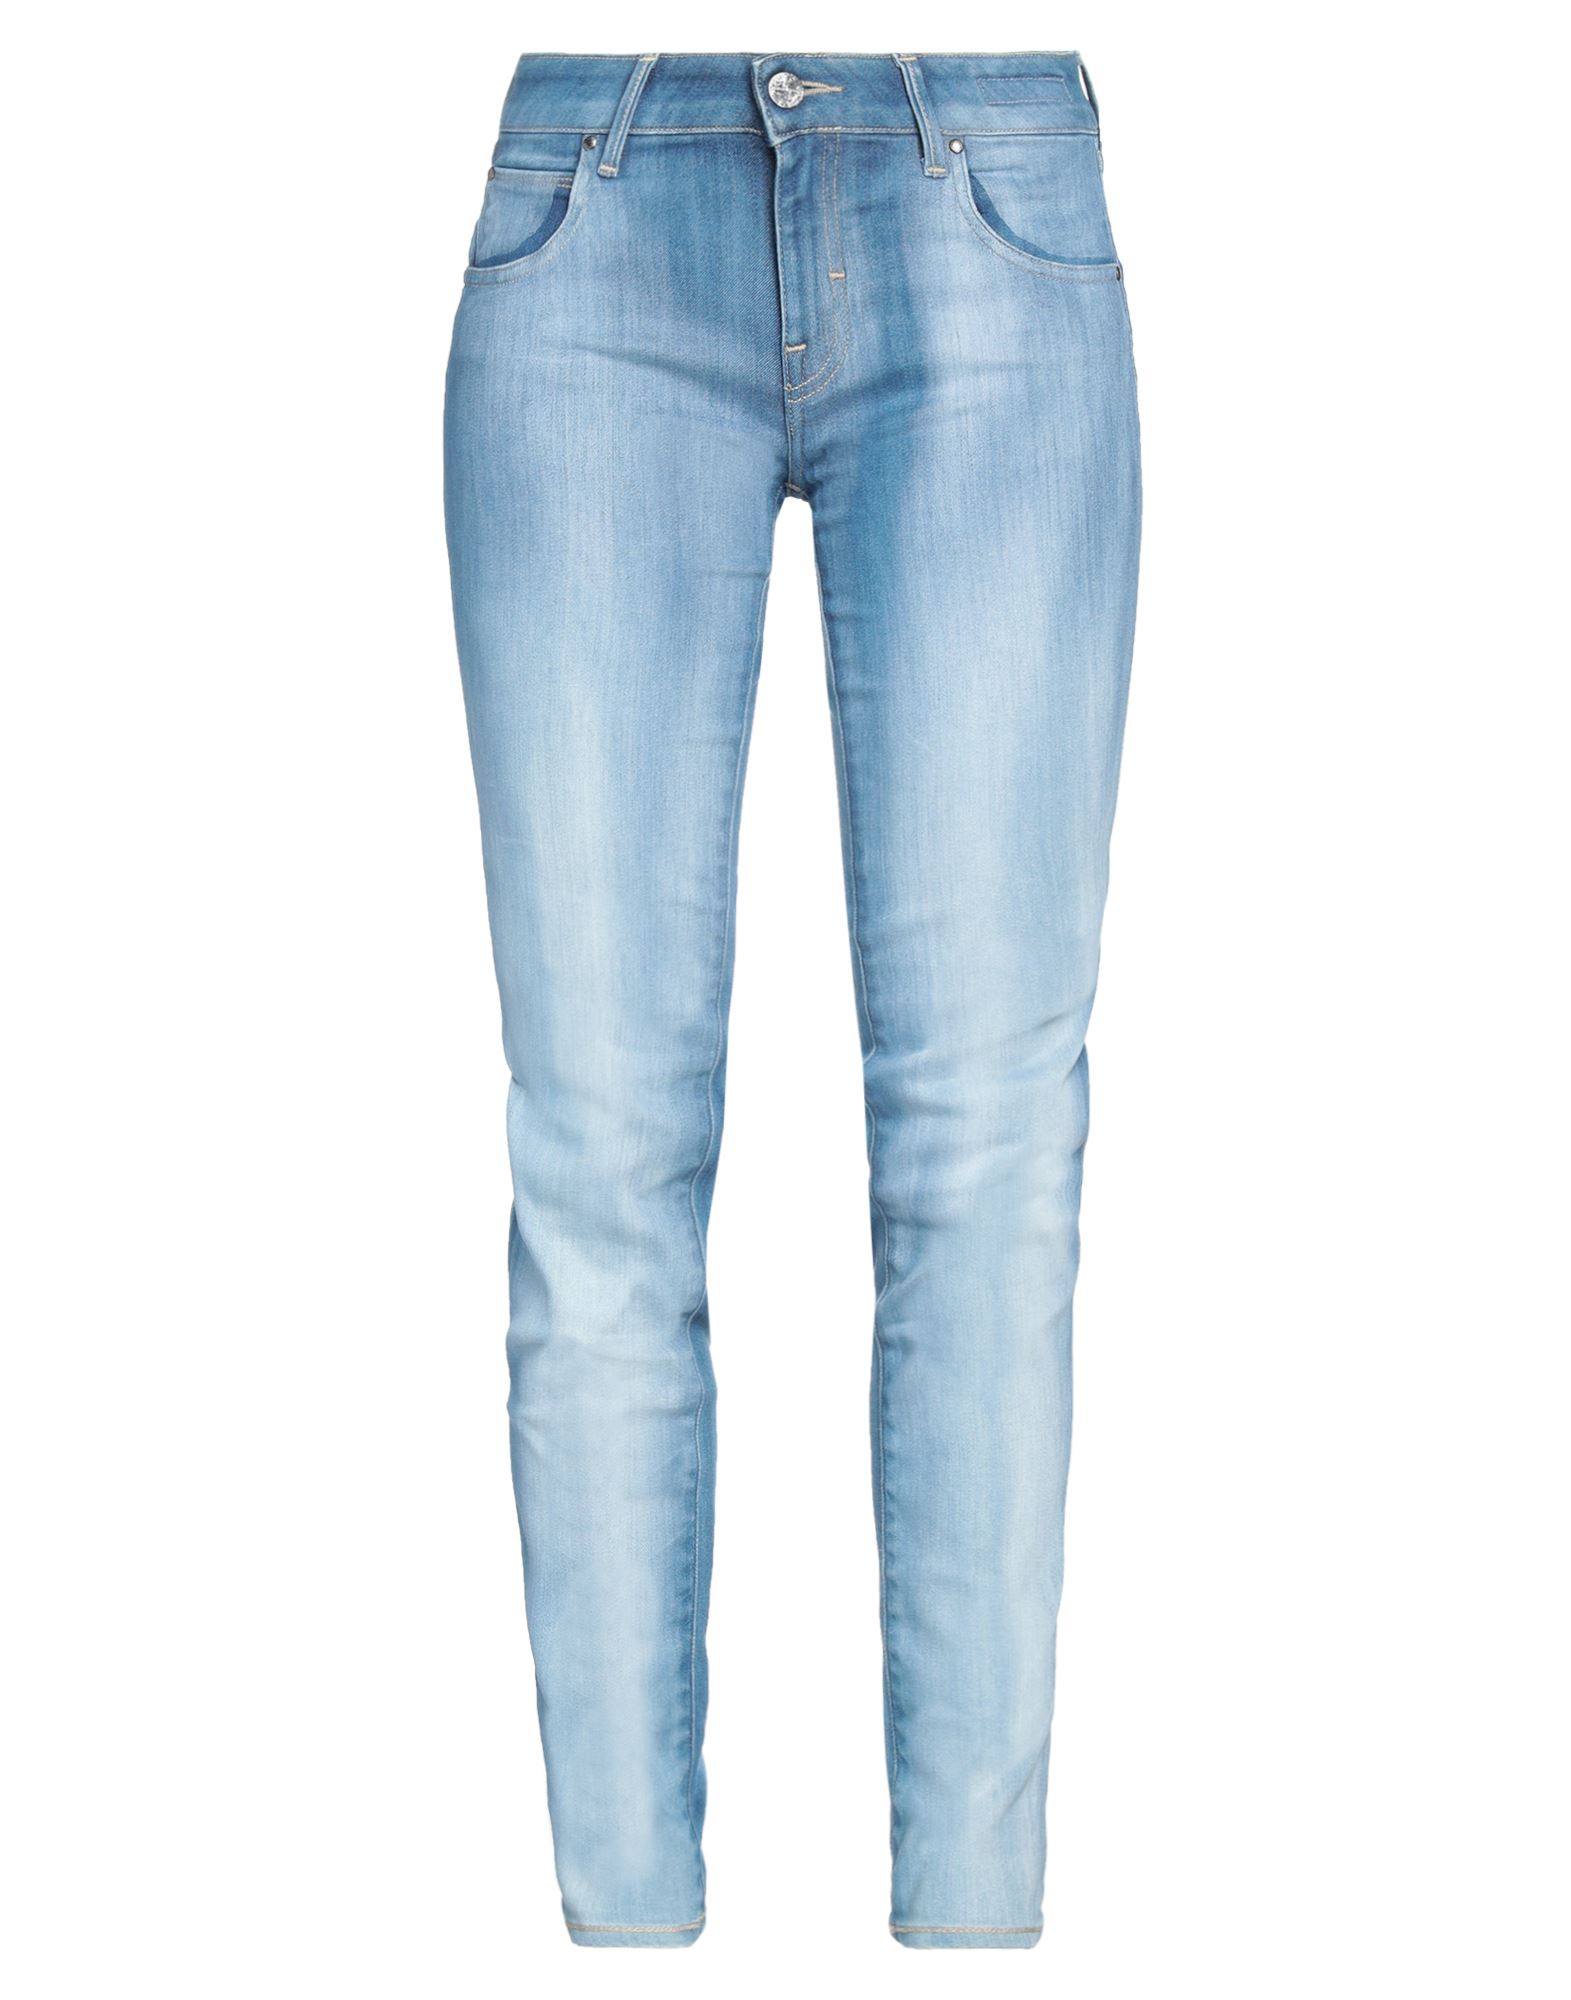 Jacob Cohёn Woman Jeans Blue Size 28 Cotton, Elastomultiester, Elastane